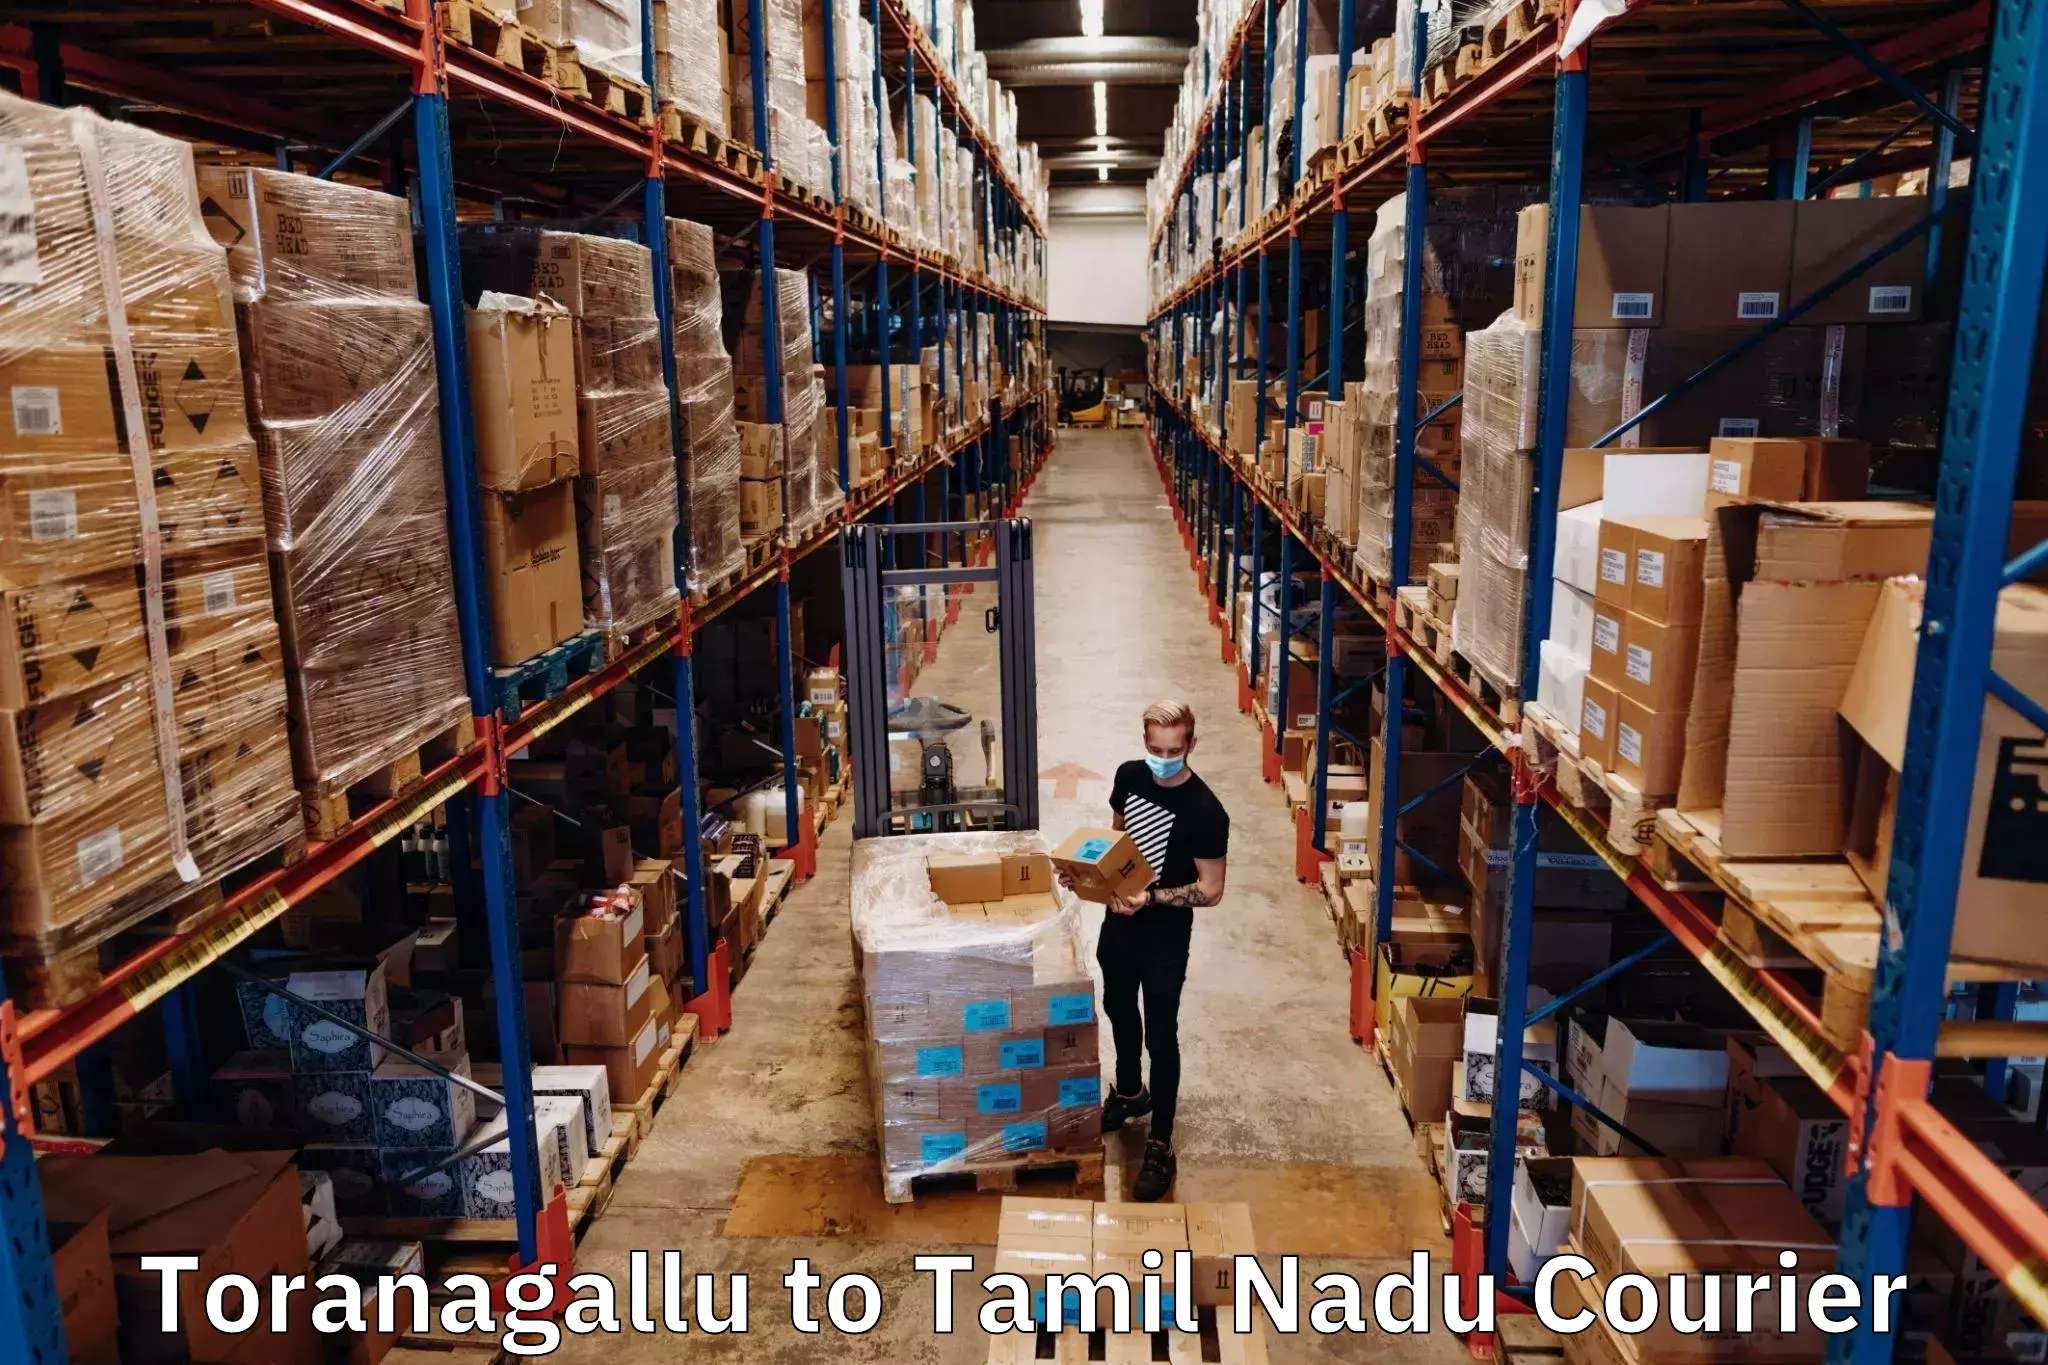 User-friendly delivery service Toranagallu to Thirukoilure